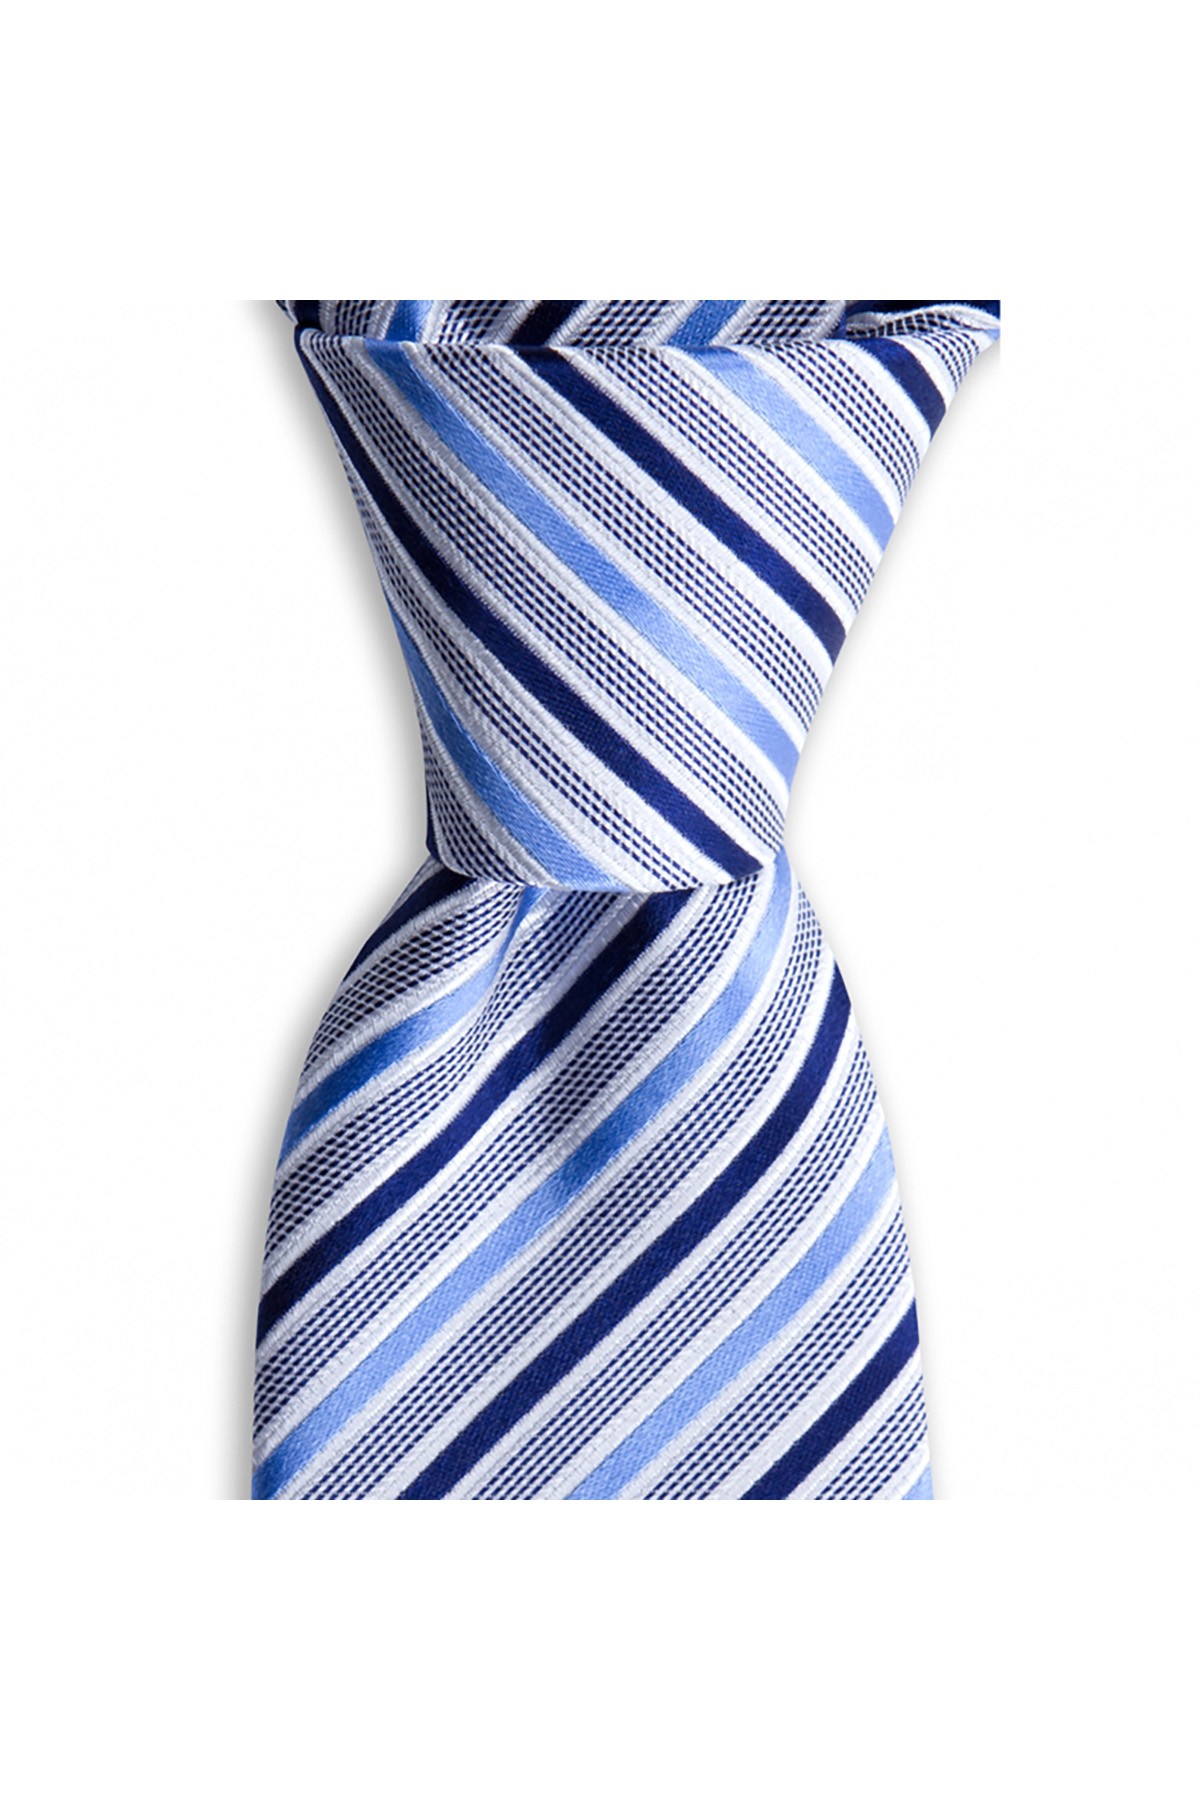 Çok çizgili 7,5 cm genişliğinde klasik ipek kravat